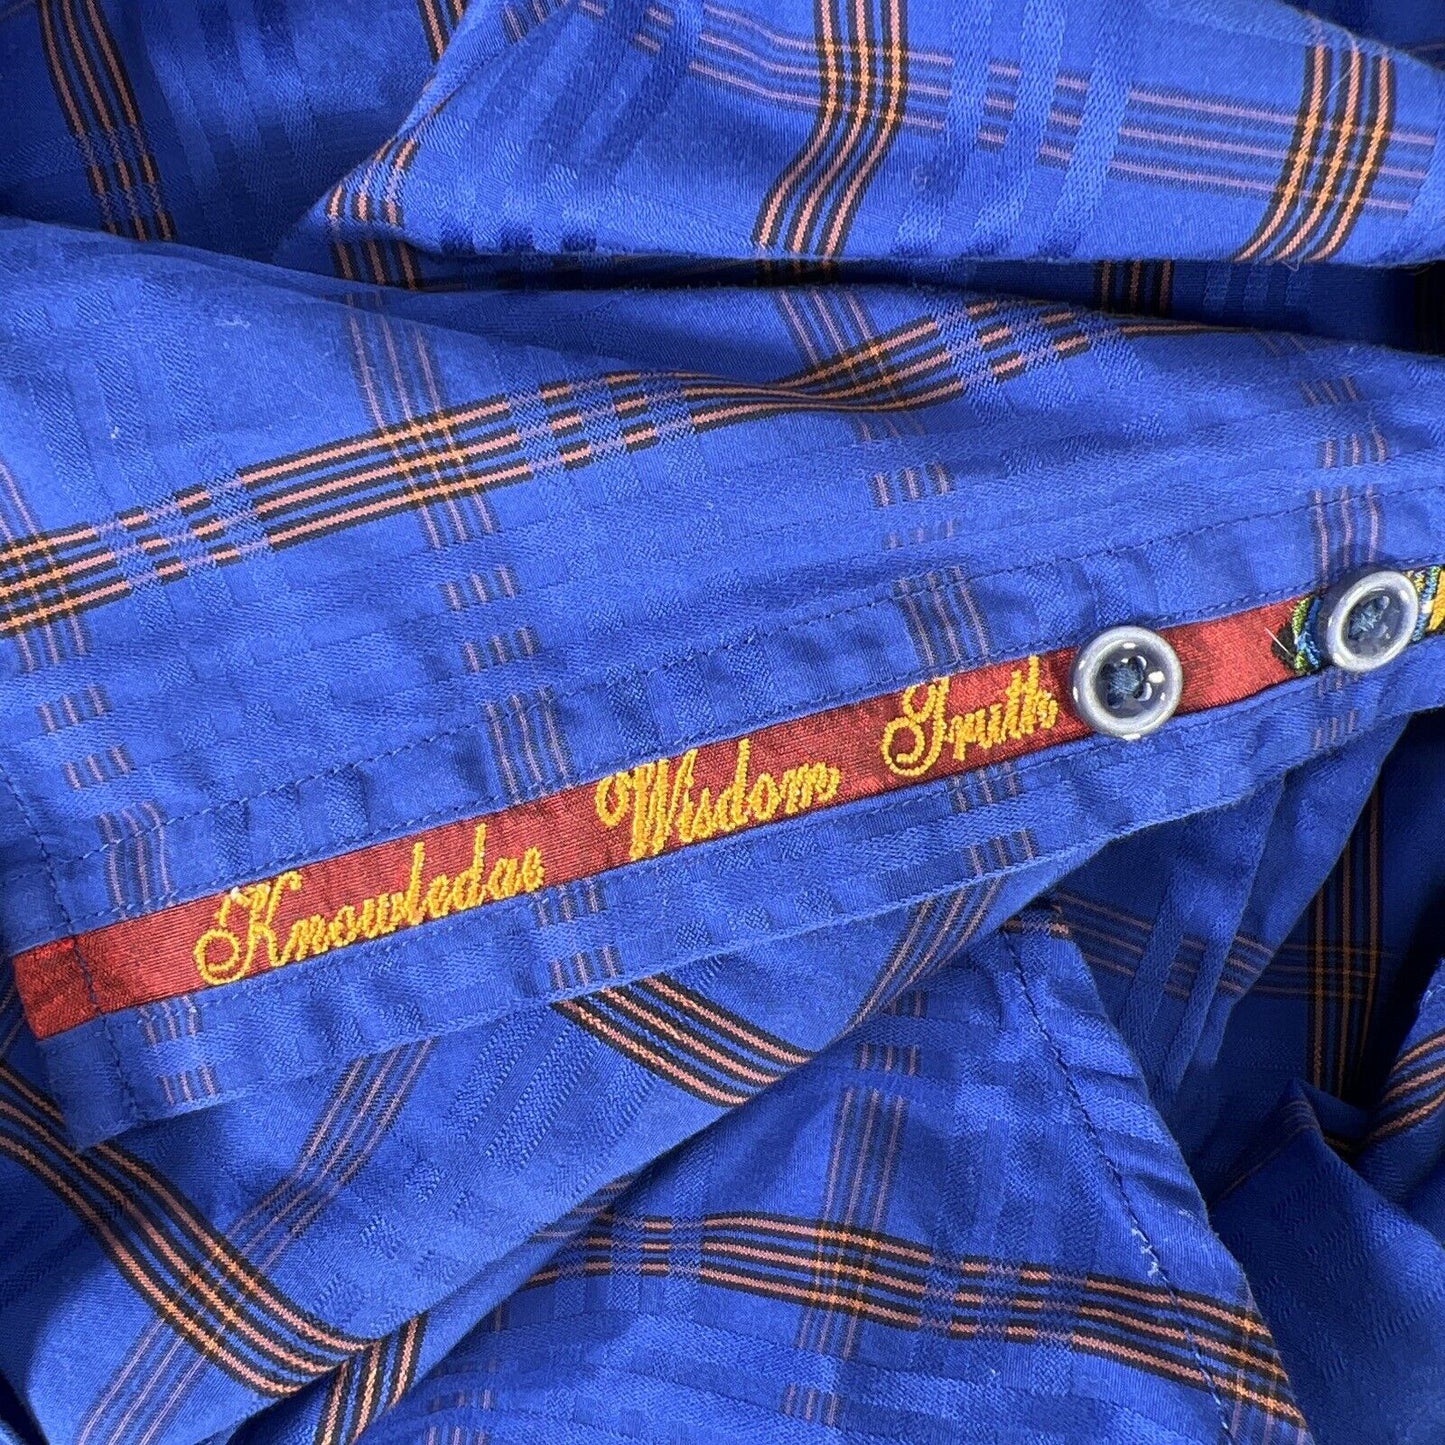 Robert Graham Men's Blue/Orange Long Sleeve Button Up Shirt - 3XL